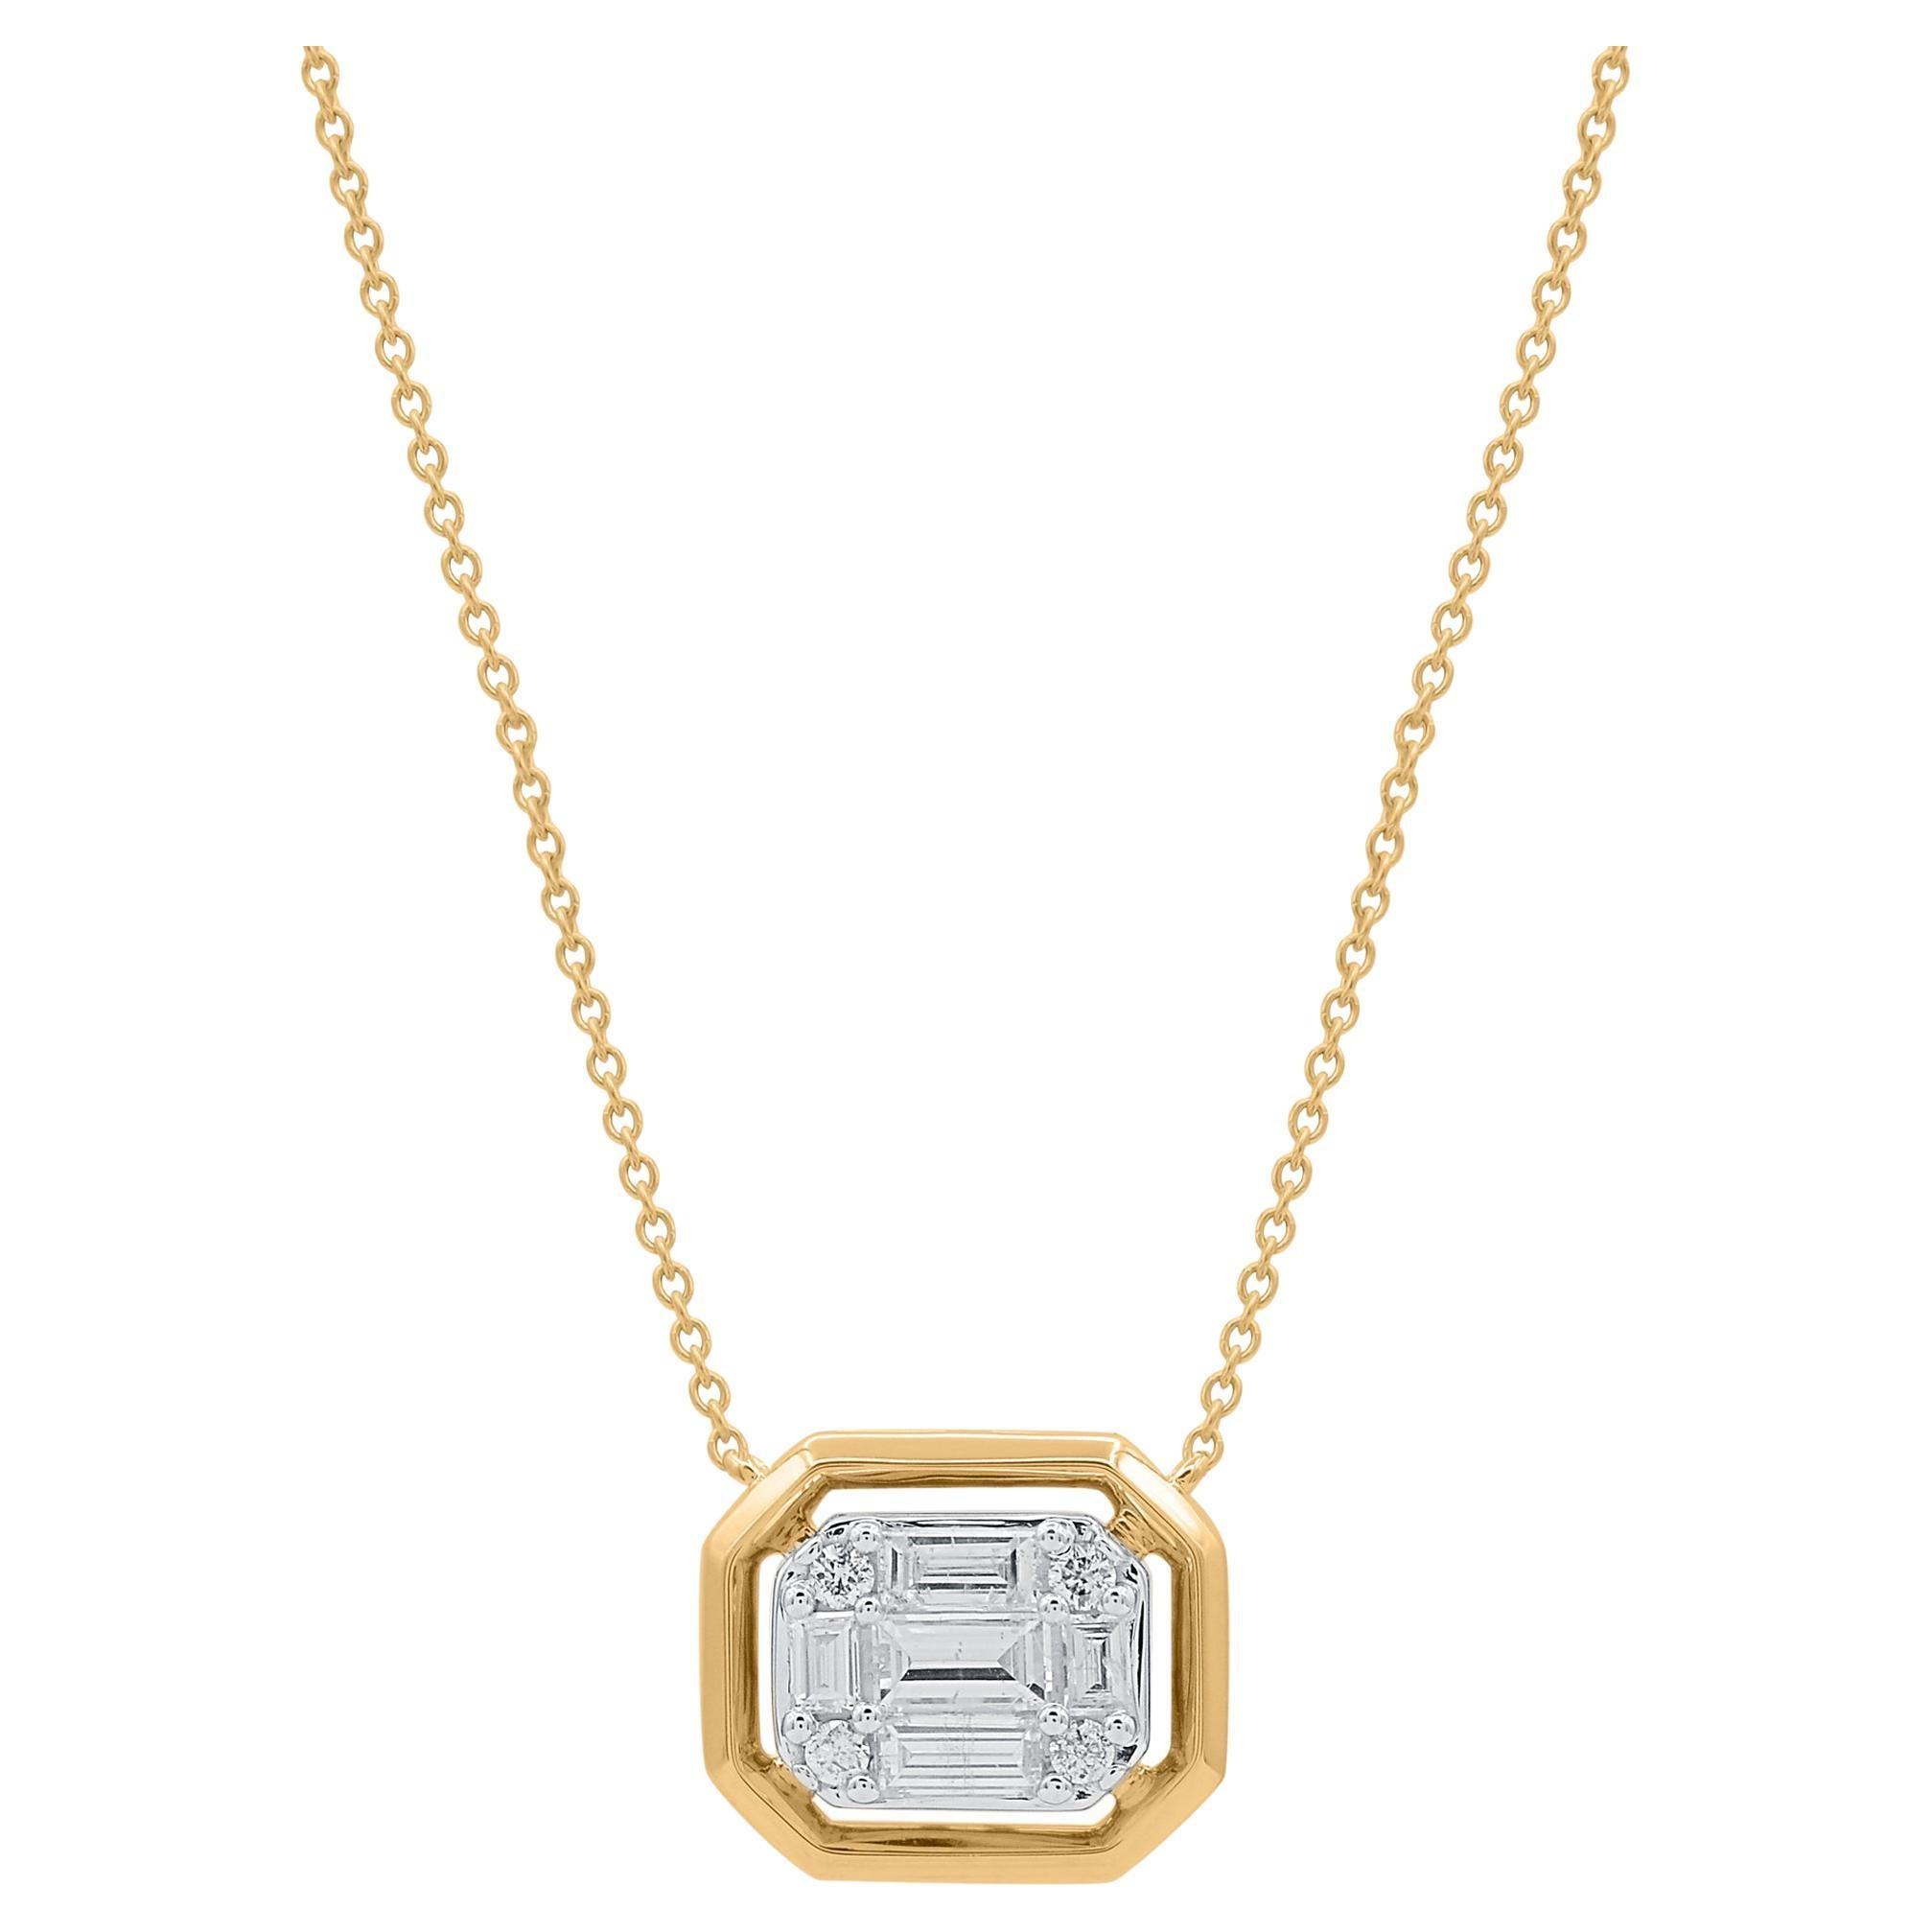 TJD 0.50 Carat Baguette & Brilliant Cut Diamond 14K Yellow Gold Pendant Necklace